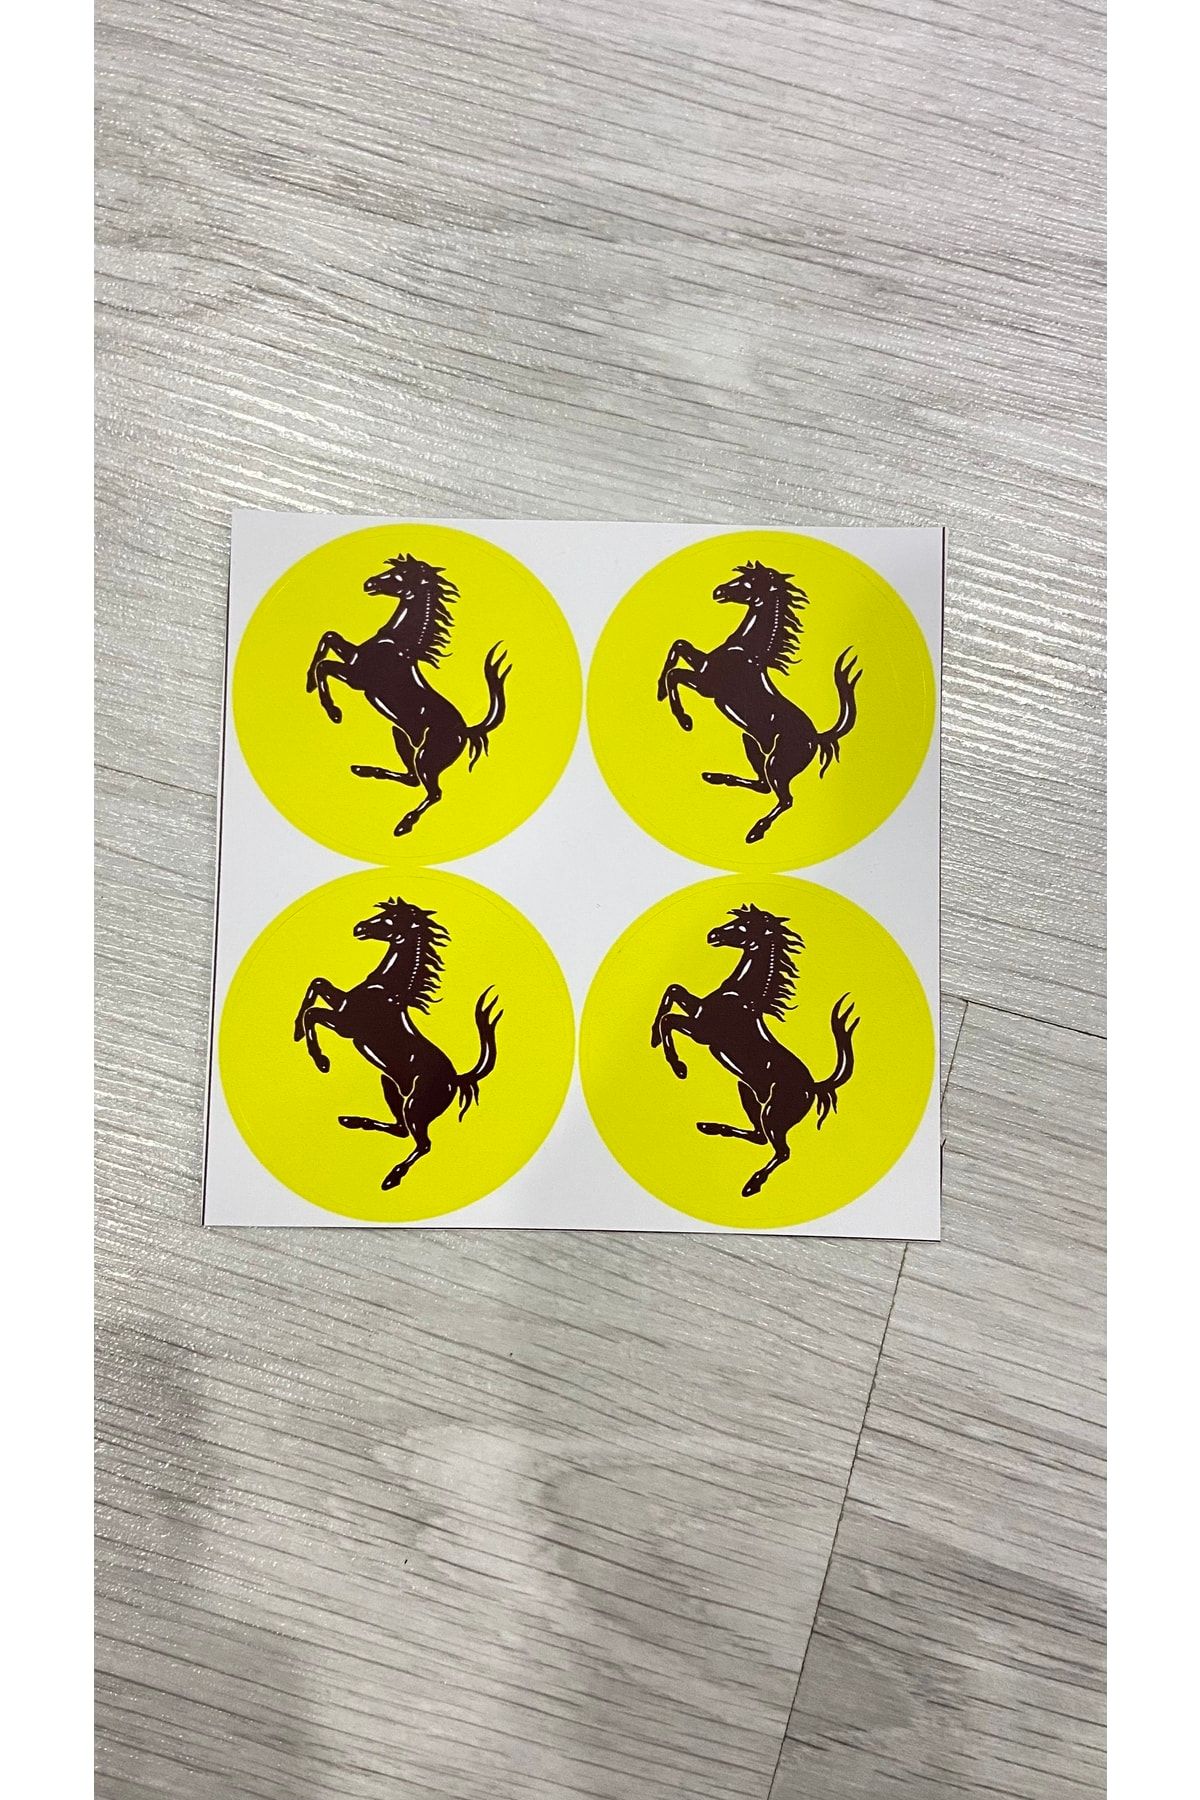 otodemir Ferrari Sticker - 4’lü Etiket Yuvarlak Sticker - Ferrari Arma Sticker Yapışkanlı